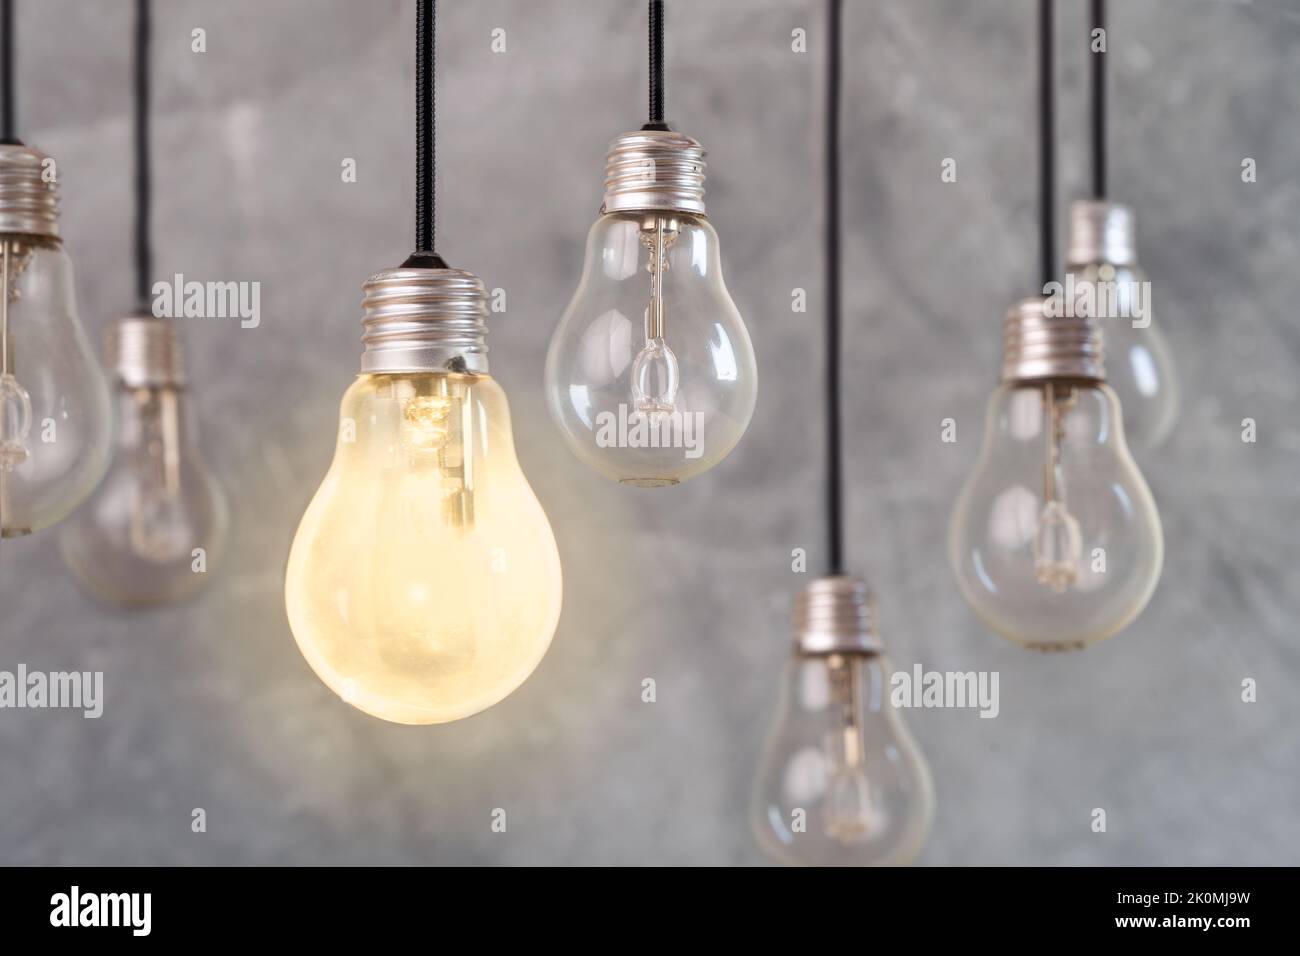 Foto ravvicinata di più lampadine e una di queste è un simbolo di idea, soluzione creativa o innovazione. Foto Stock